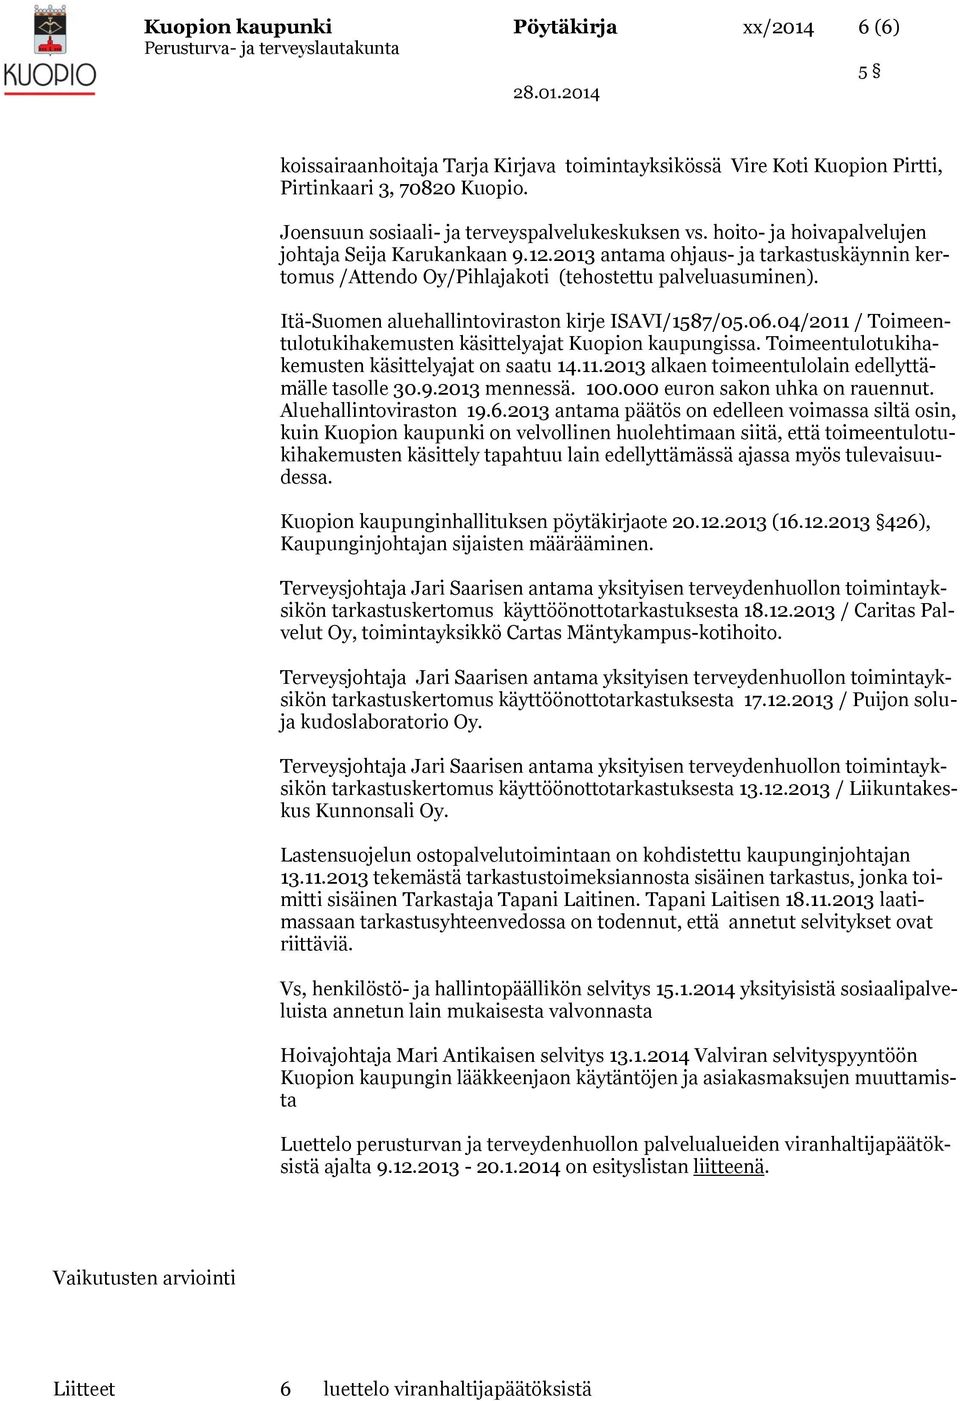 Itä-Suomen aluehallintoviraston kirje ISAVI/1587/05.06.04/2011 / Toimeentulotukihakemusten käsittelyajat Kuopion kaupungissa. Toimeentulotukihakemusten käsittelyajat on saatu 14.11.2013 alkaen toimeentulolain edellyttämälle tasolle 30.